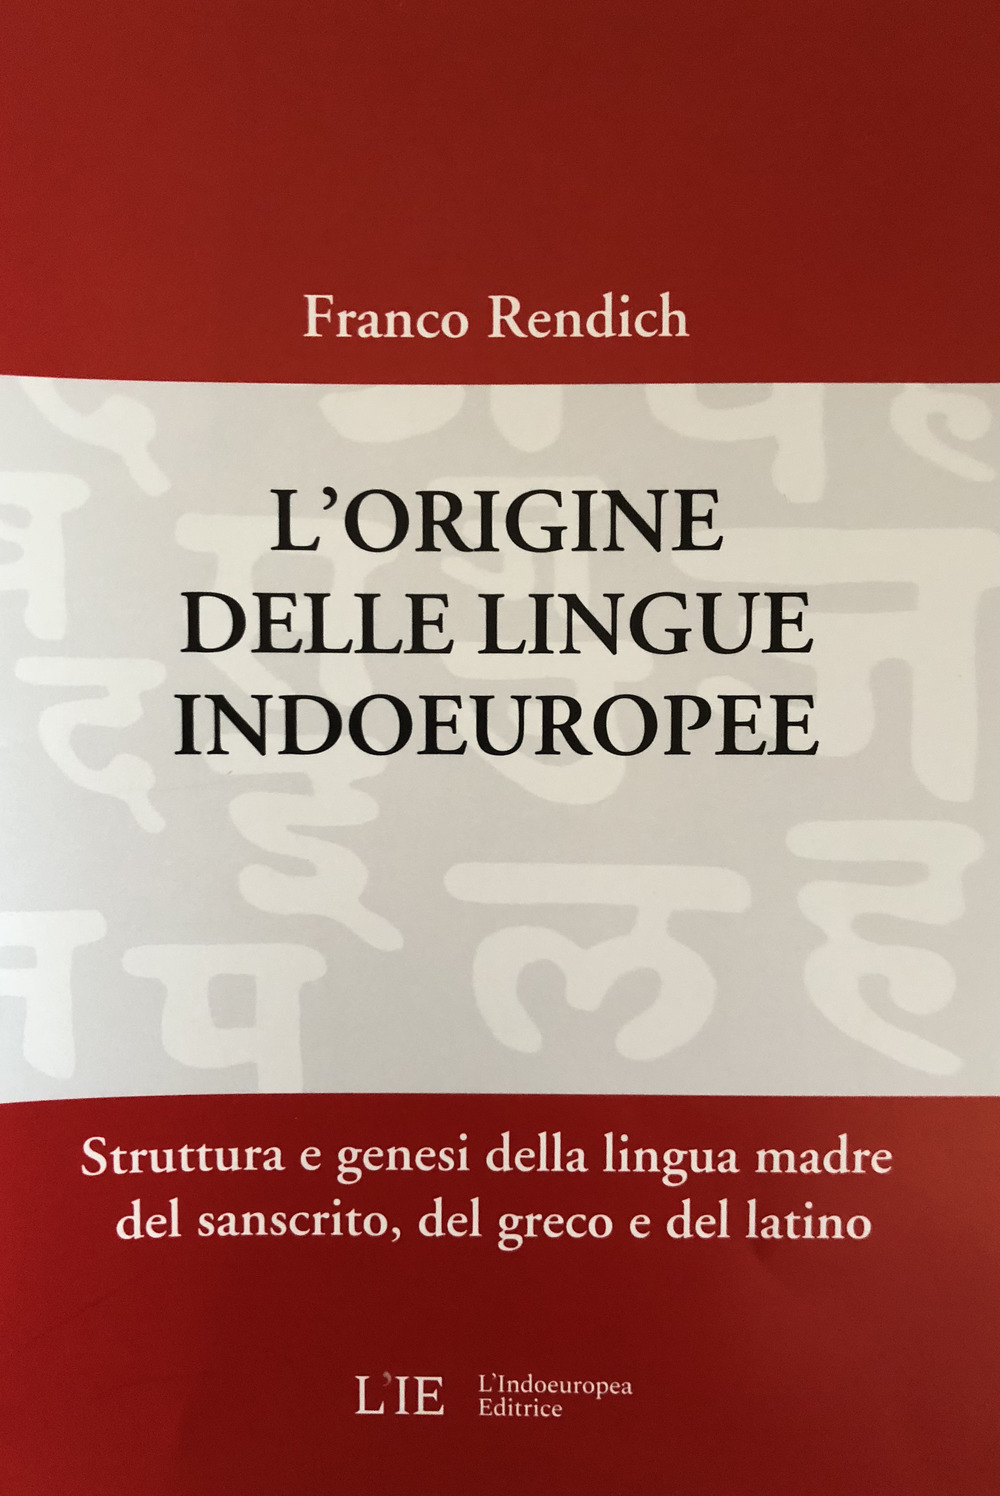 L'origine delle lingue indoeuropee. Struttura e genesi della lingua madre del sanscrito, del greco e del latino